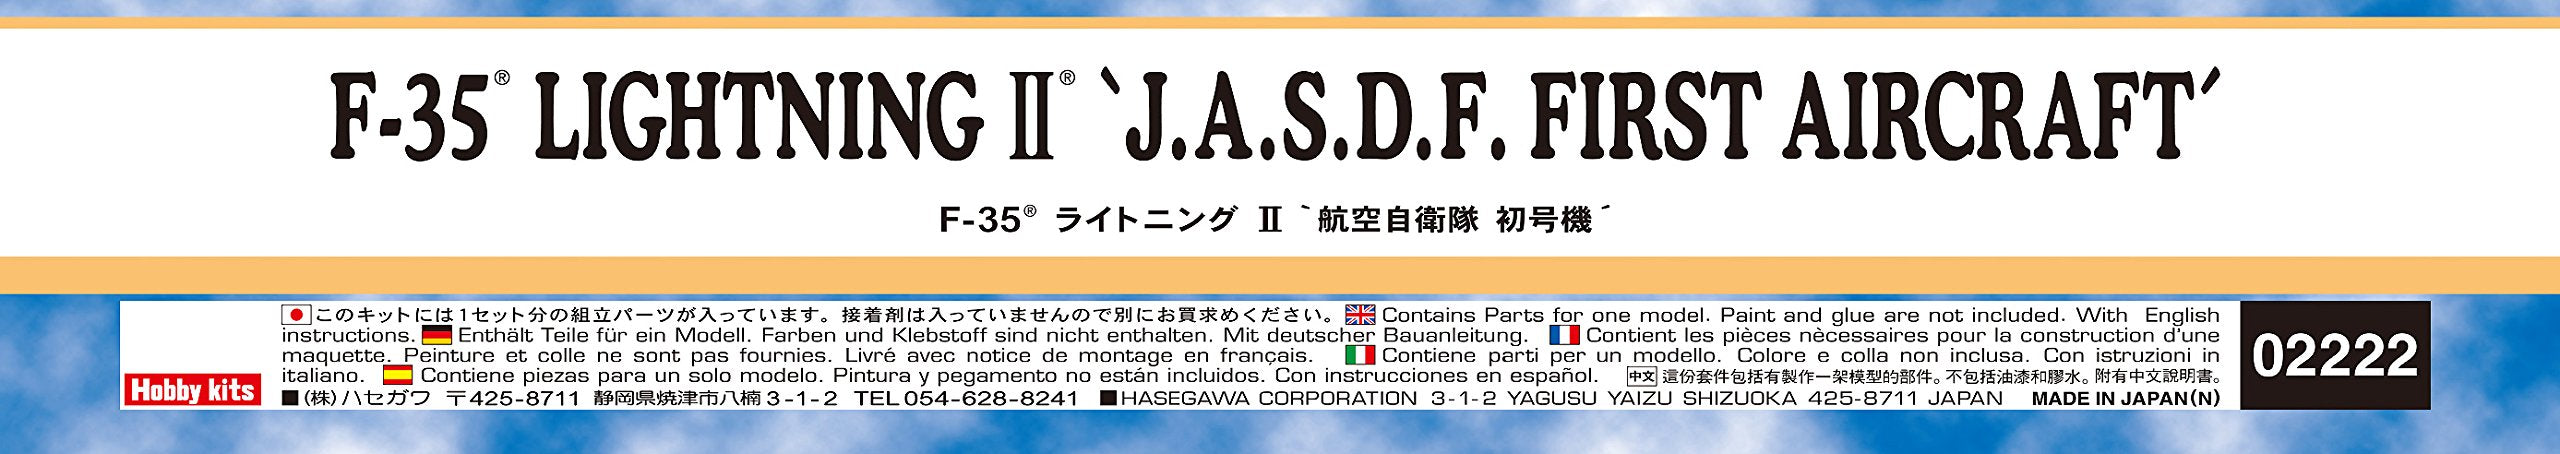 HASEGAWA 02222 F-35 Lightning II Jasdf First Aircraft Bausatz im Maßstab 1:72